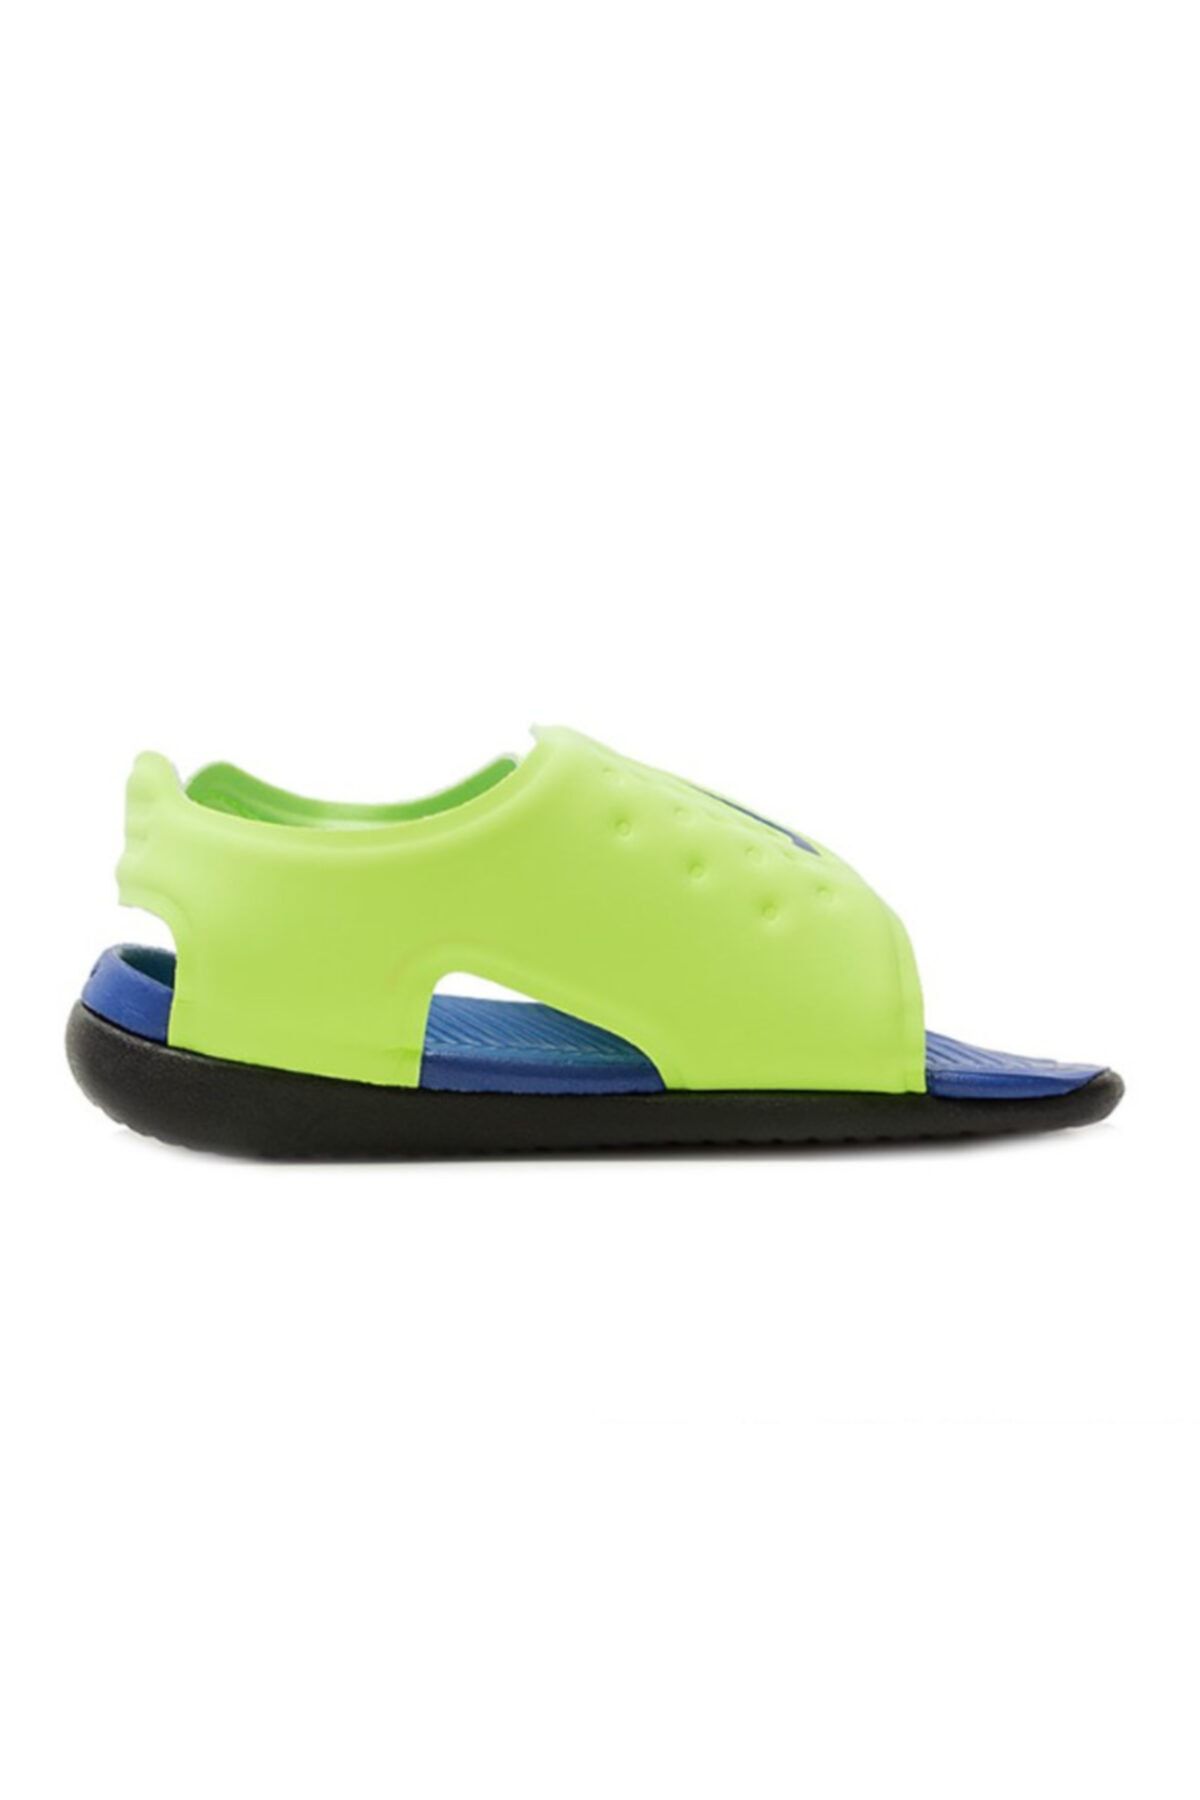 Nike Sunray 5 Sandals Baby AJ9077 300 را تنظیم کنید